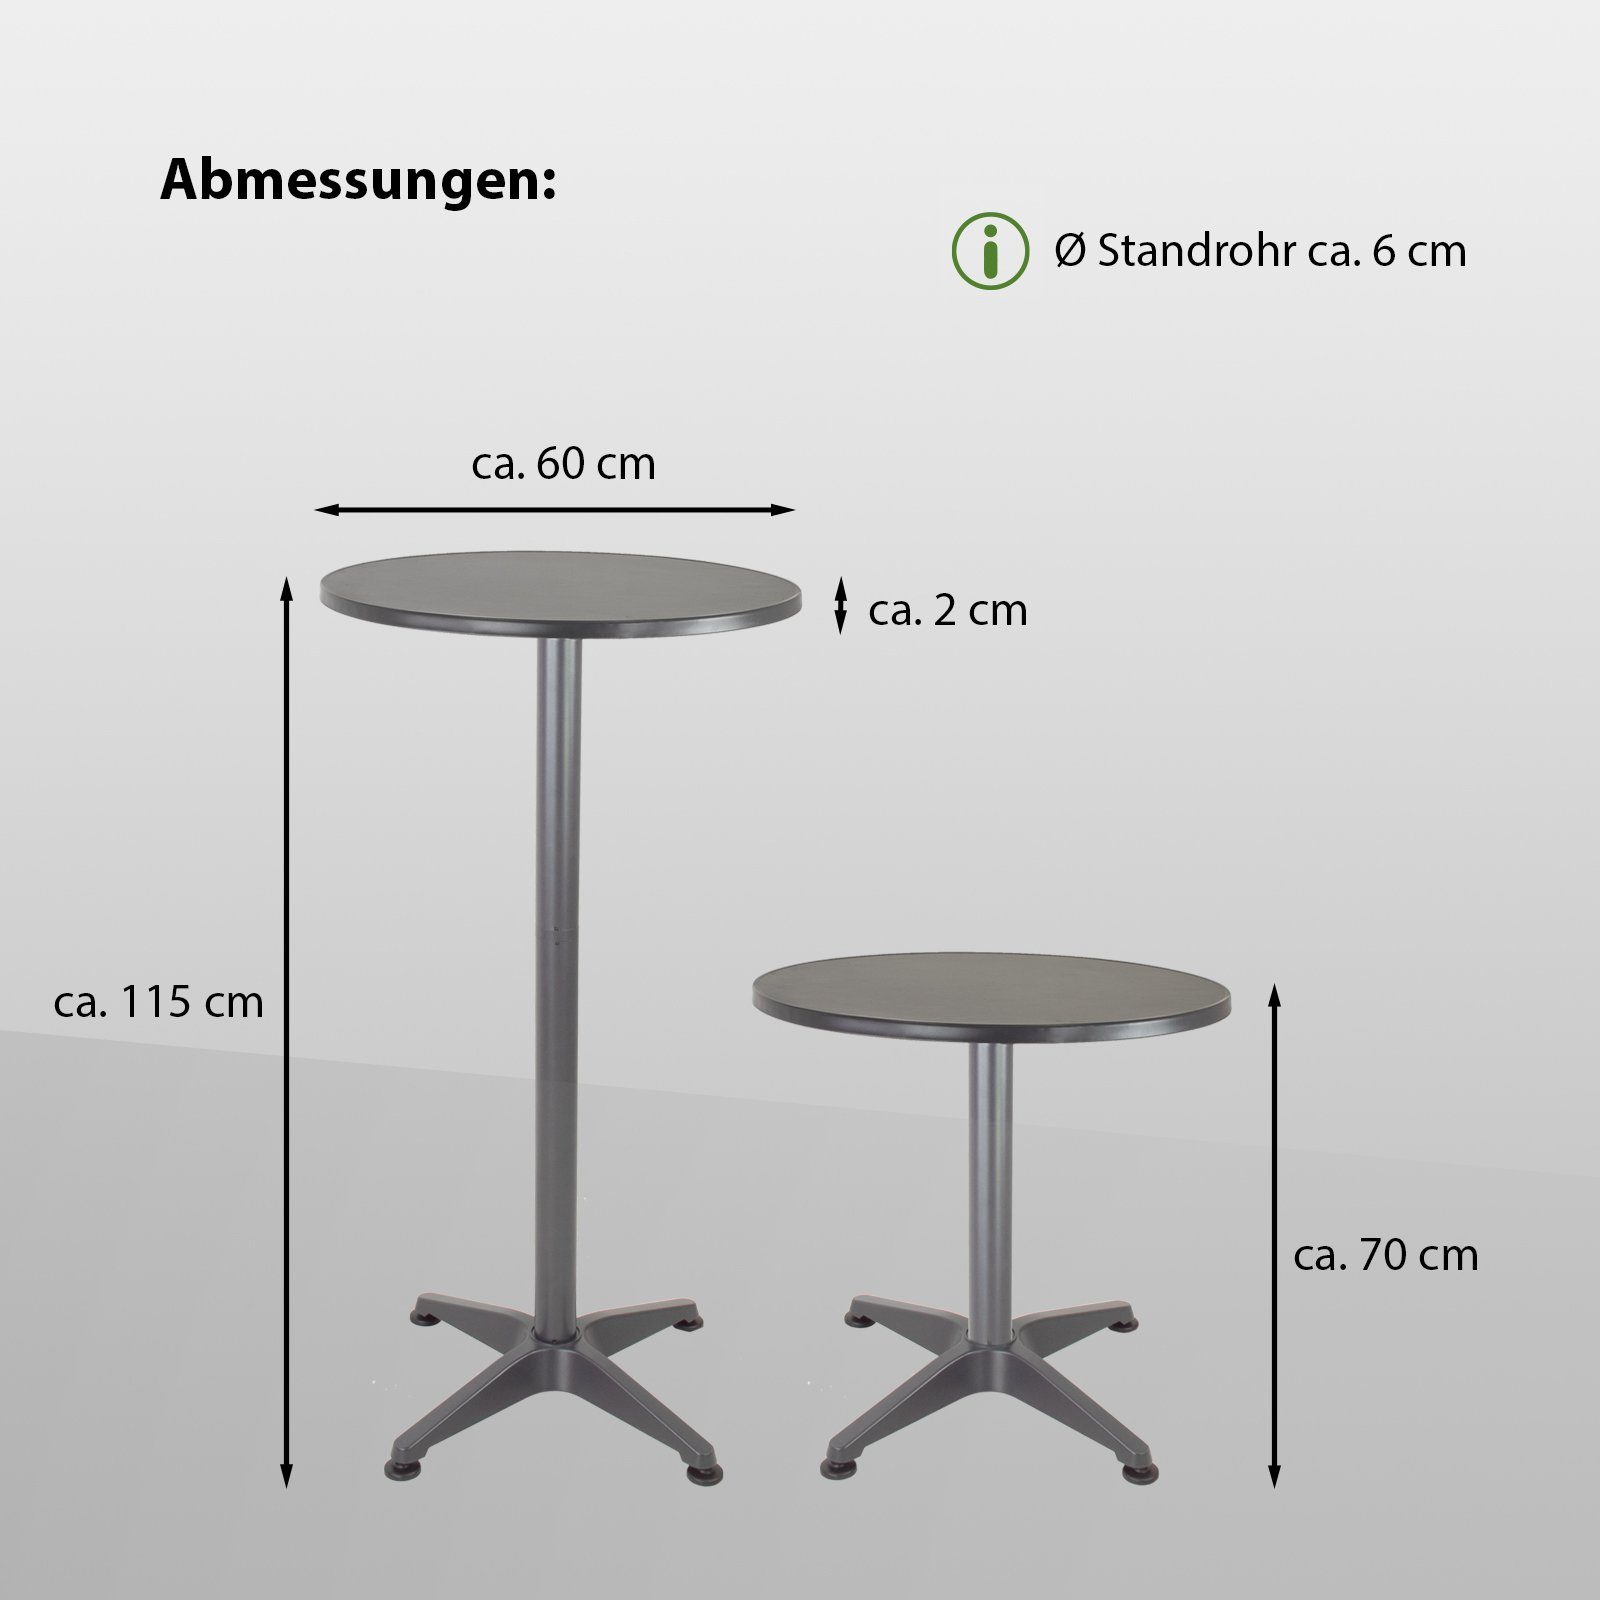 TRUTZHOLM Bistrotisch (2in1 Alu Bistrotisch Stehtisch 70/115 cm höhenverstellbar 2x Tisch) klappbar 2in1